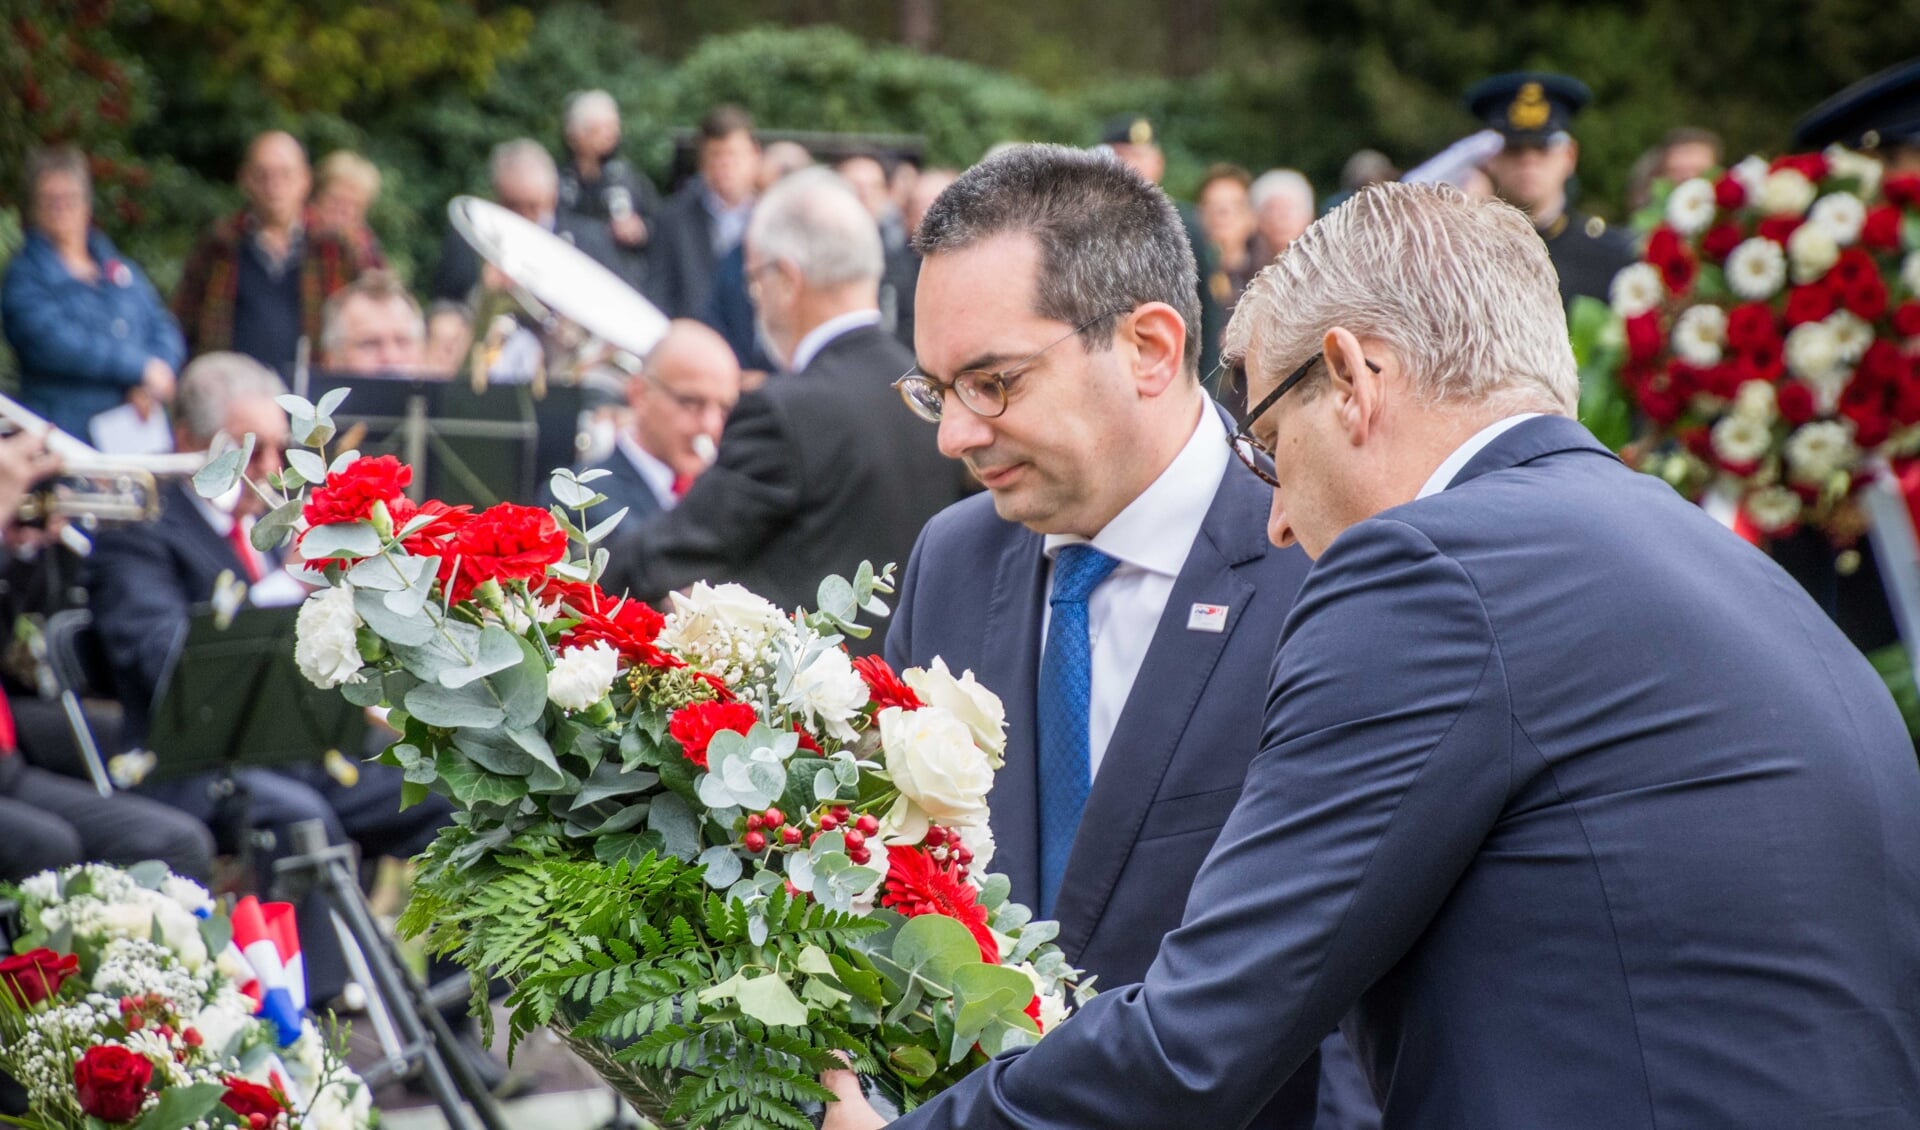 Burgemeester Adriaansen en zijn Steenbergse collega Van den Belt leggen een krans.